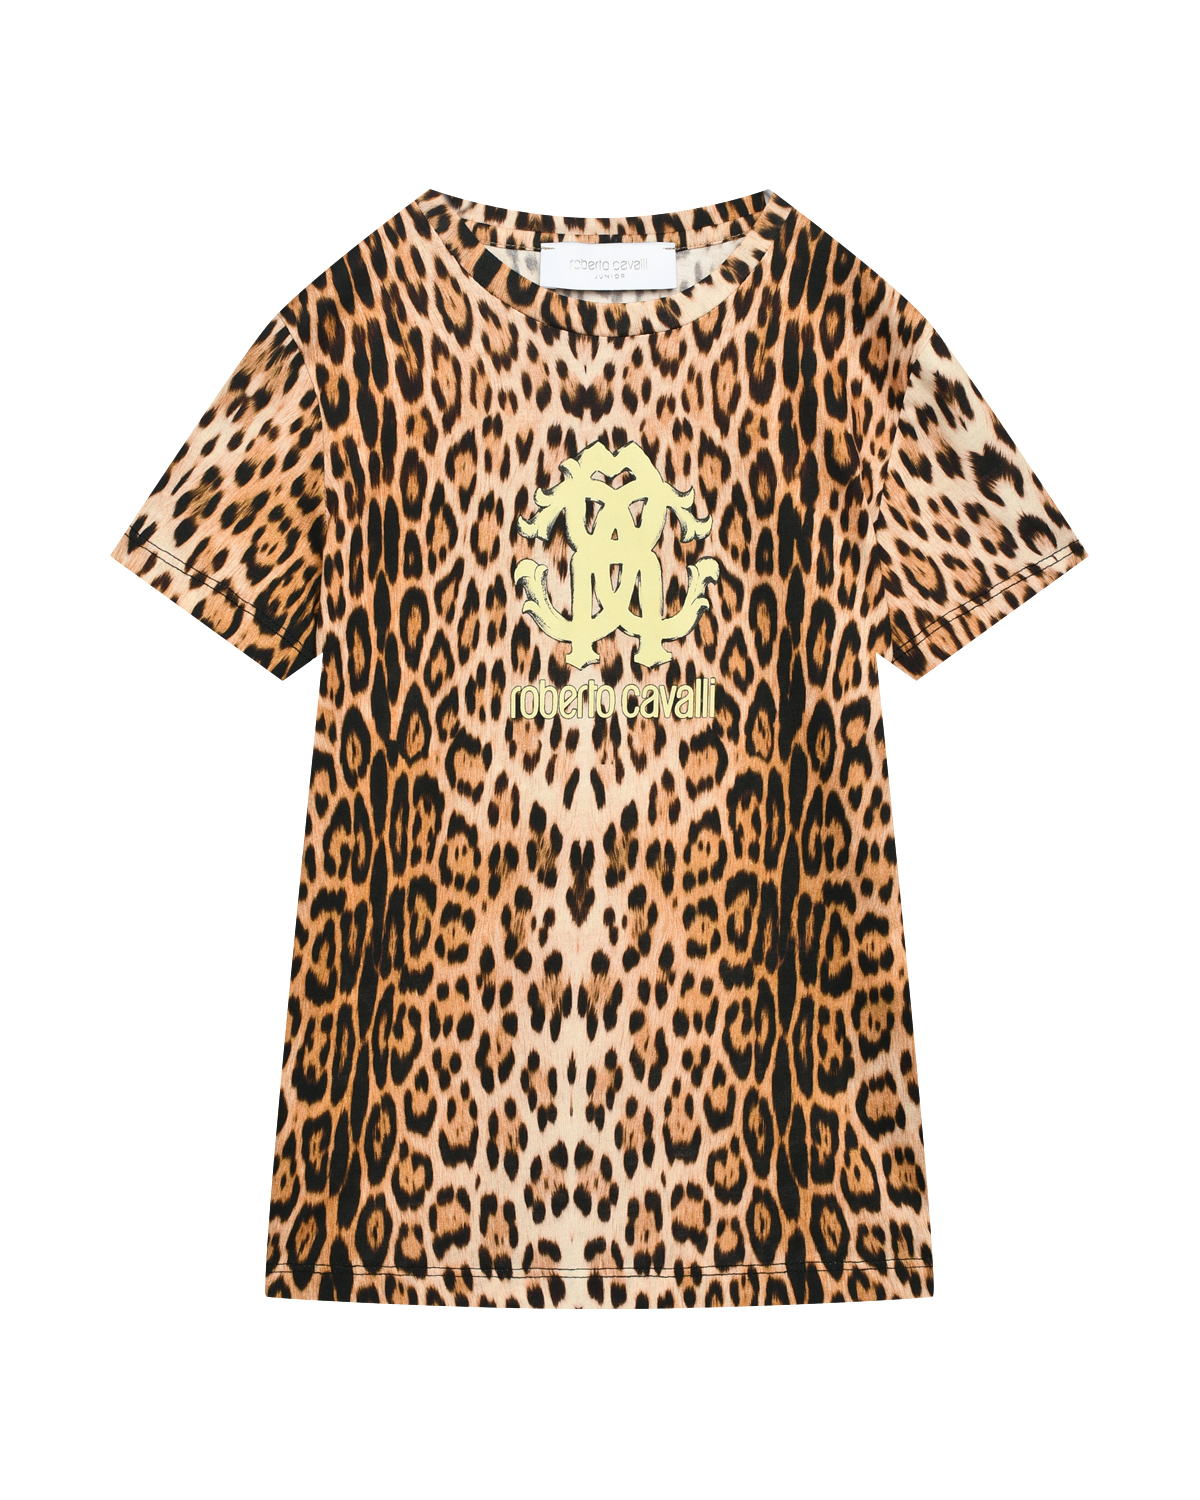 Леопардовая футболка с лого Roberto Cavalli, размер 140, цвет коричневый - фото 1